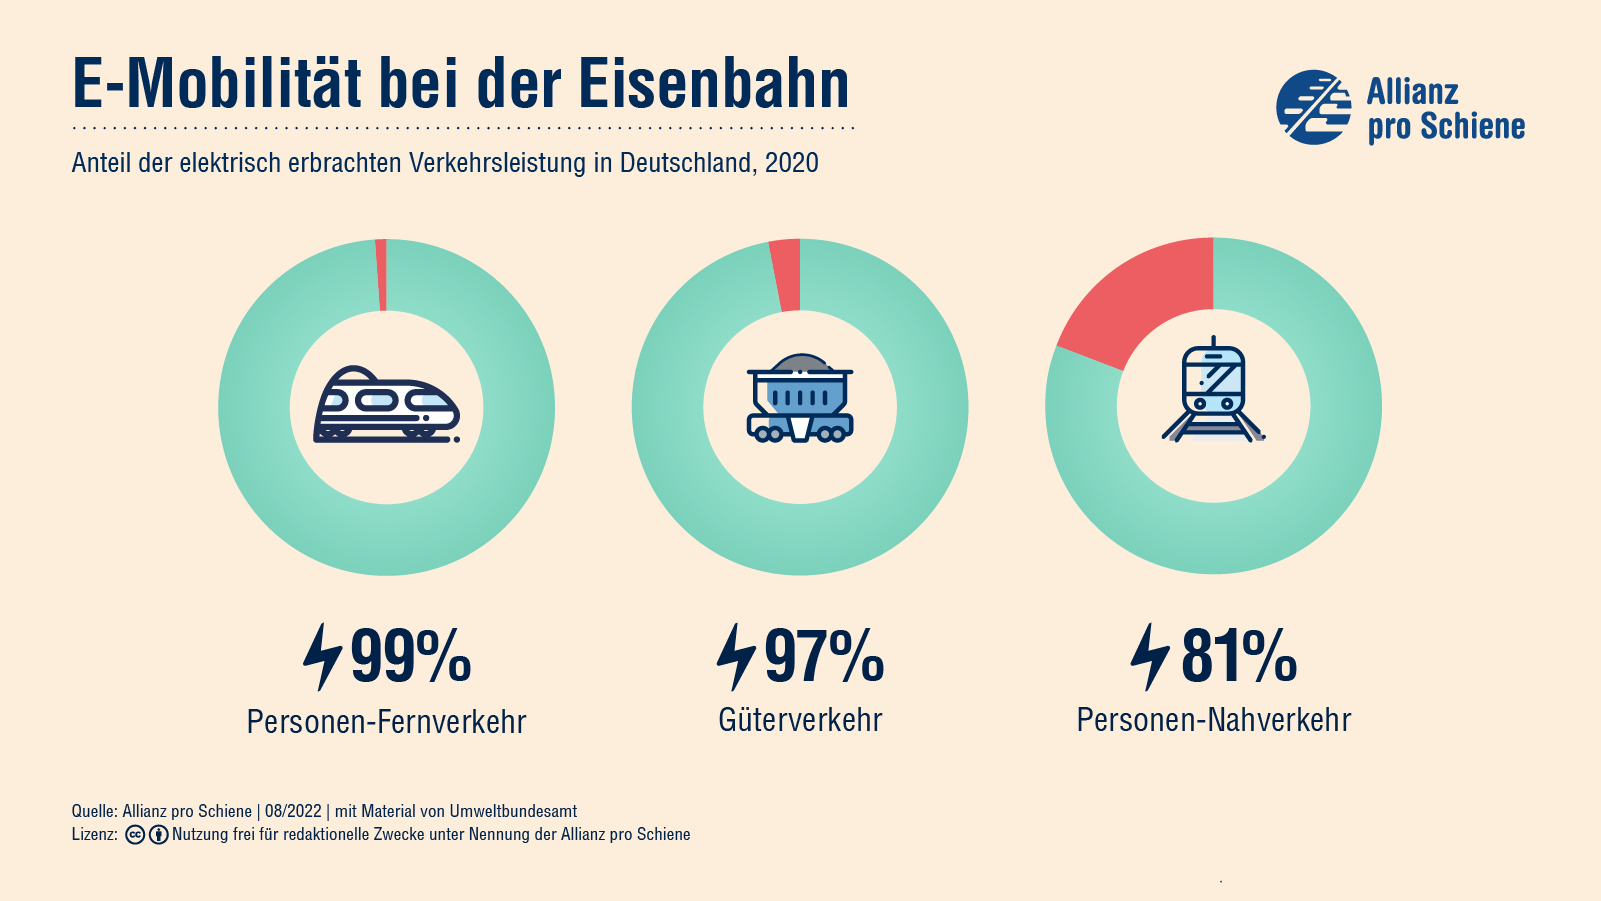 2020 betrug der Anteil der elektrisch erbrachten Verkehrsleistung in Deutschland in Personen-Fernverkehr 99%, im Güterverkehr 97% und im Personen-Nahverkehr 81%.